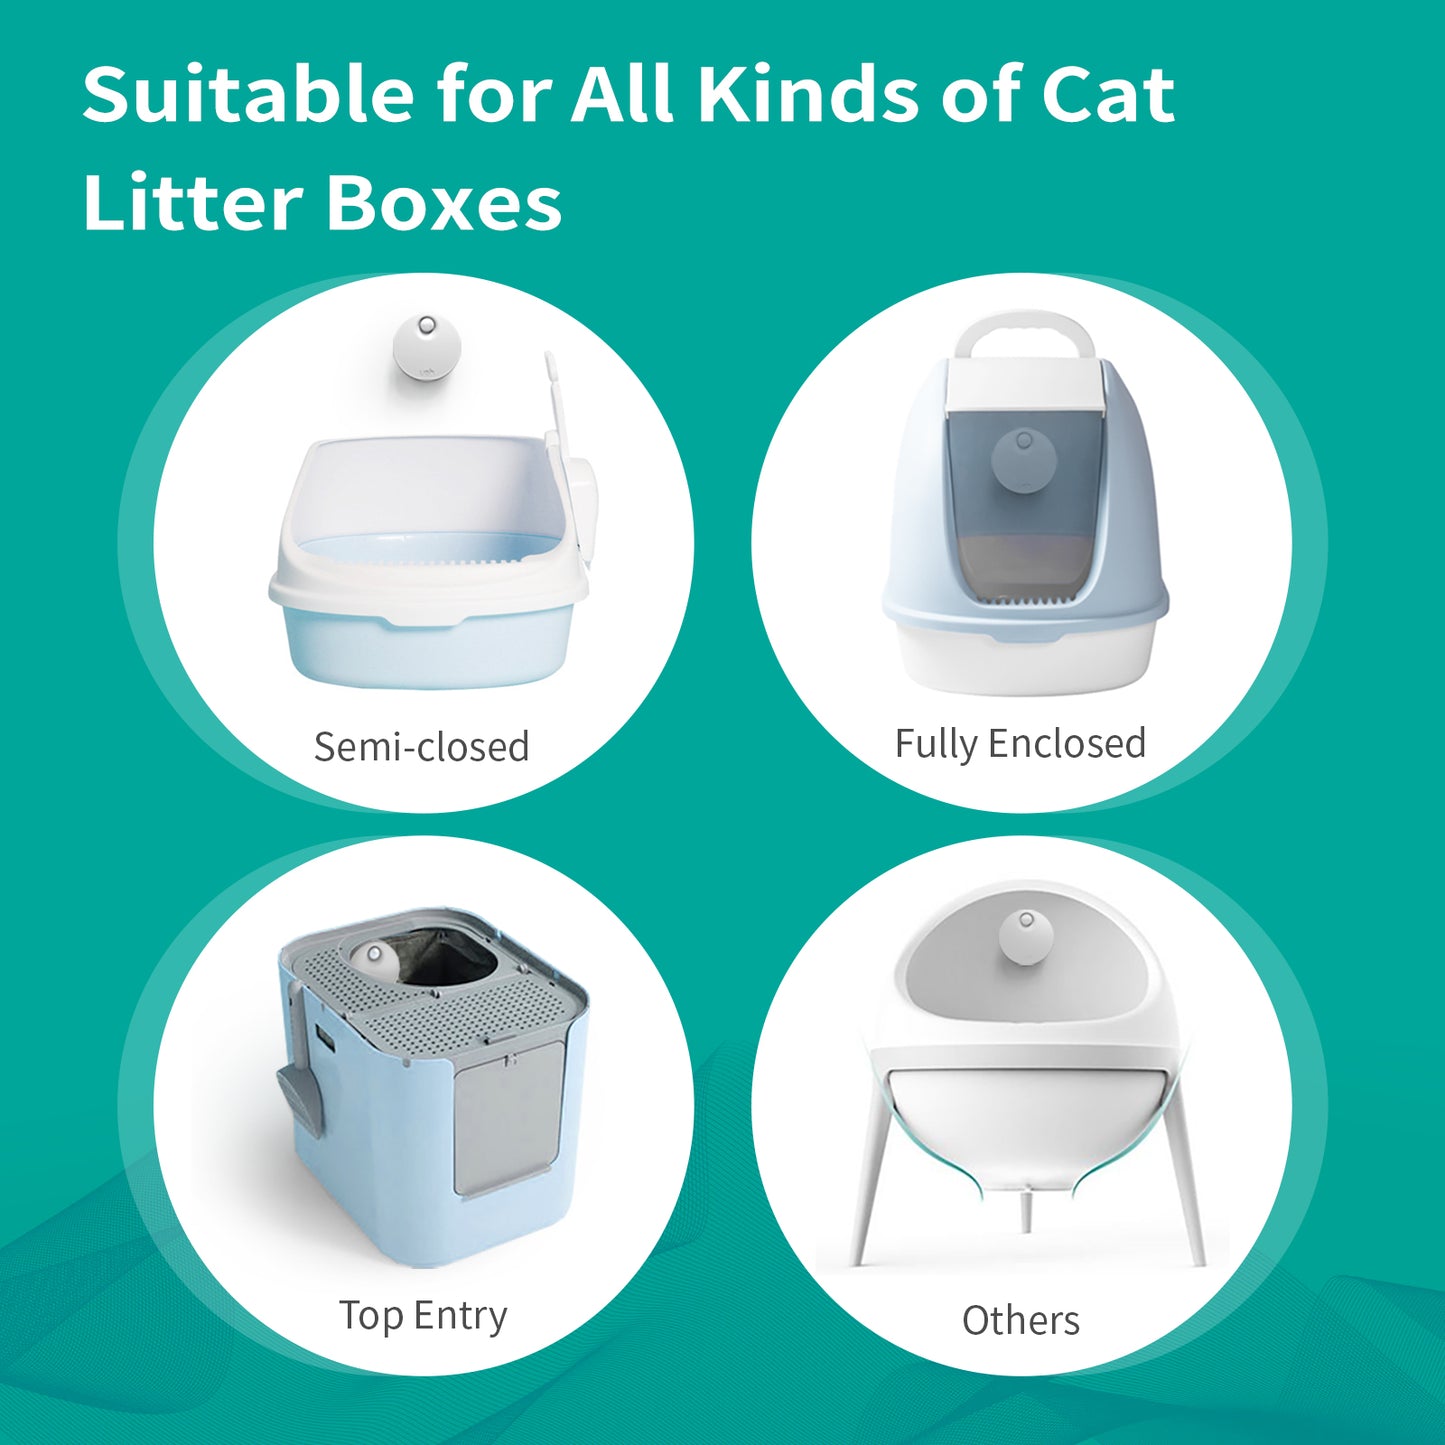 Uah Pet - Smart Cat Litter Deodorizer